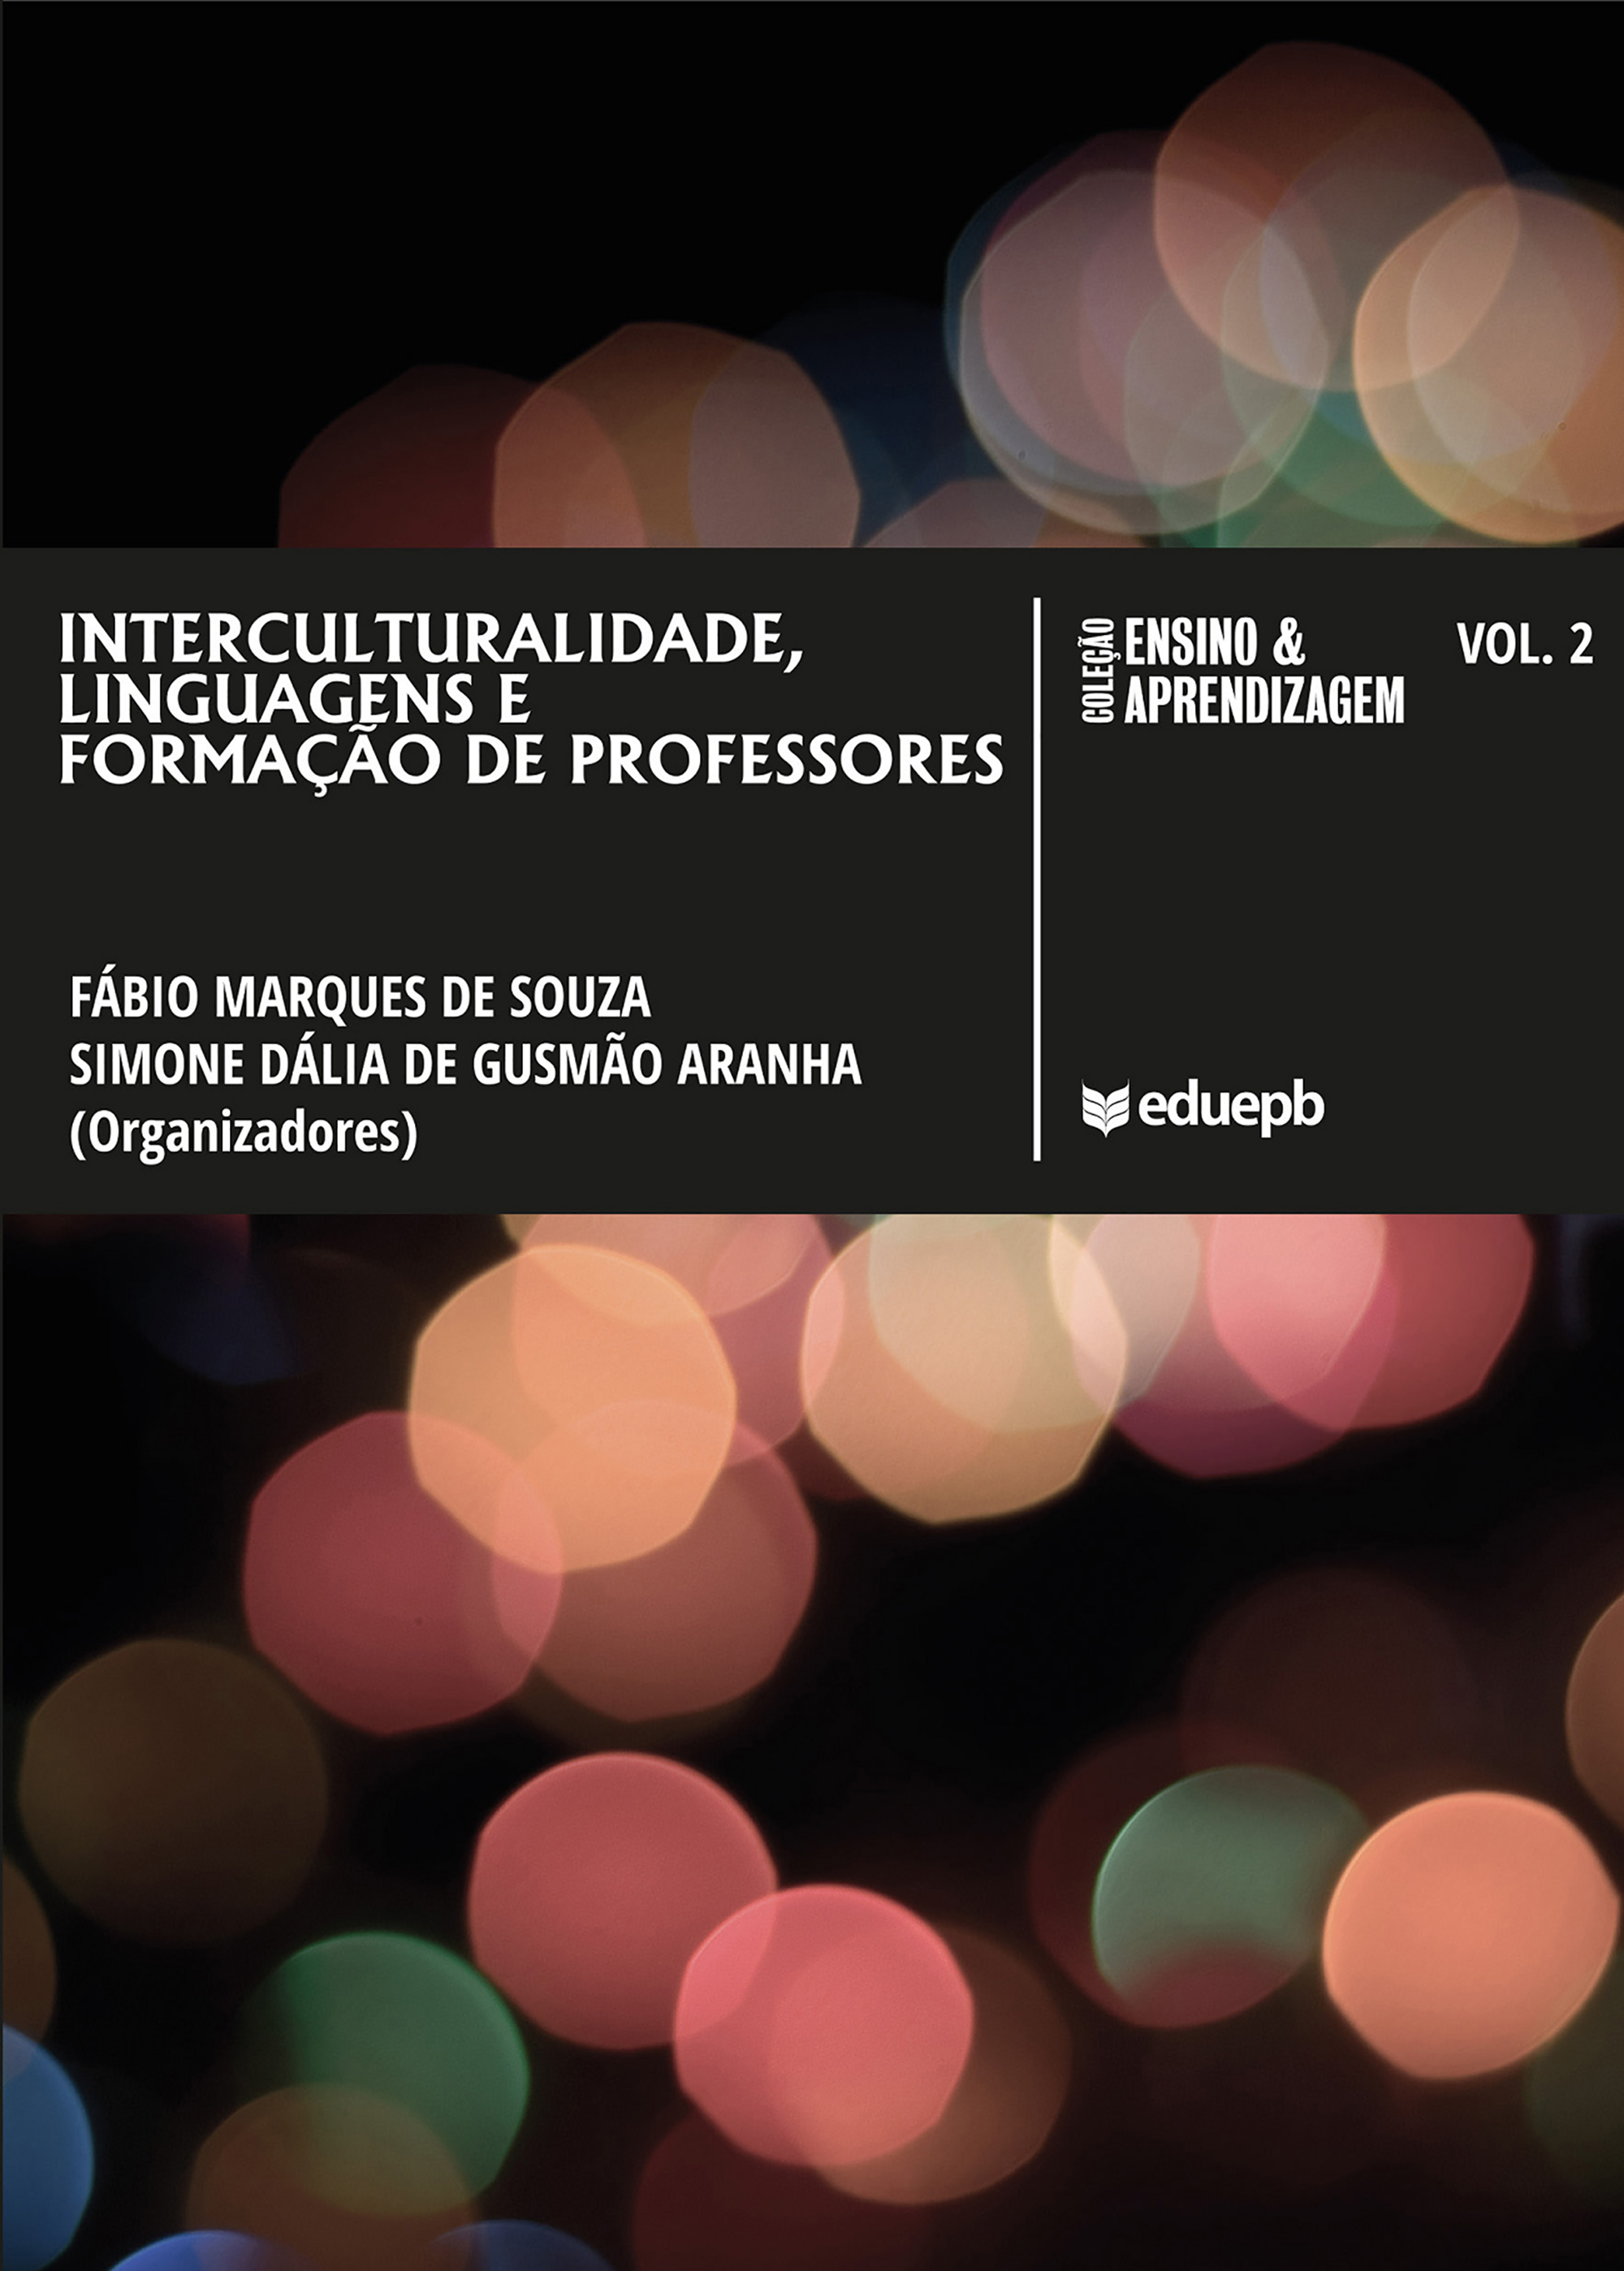 Imagen de portada del libro Interculturalidade, linguagens e formação de professores